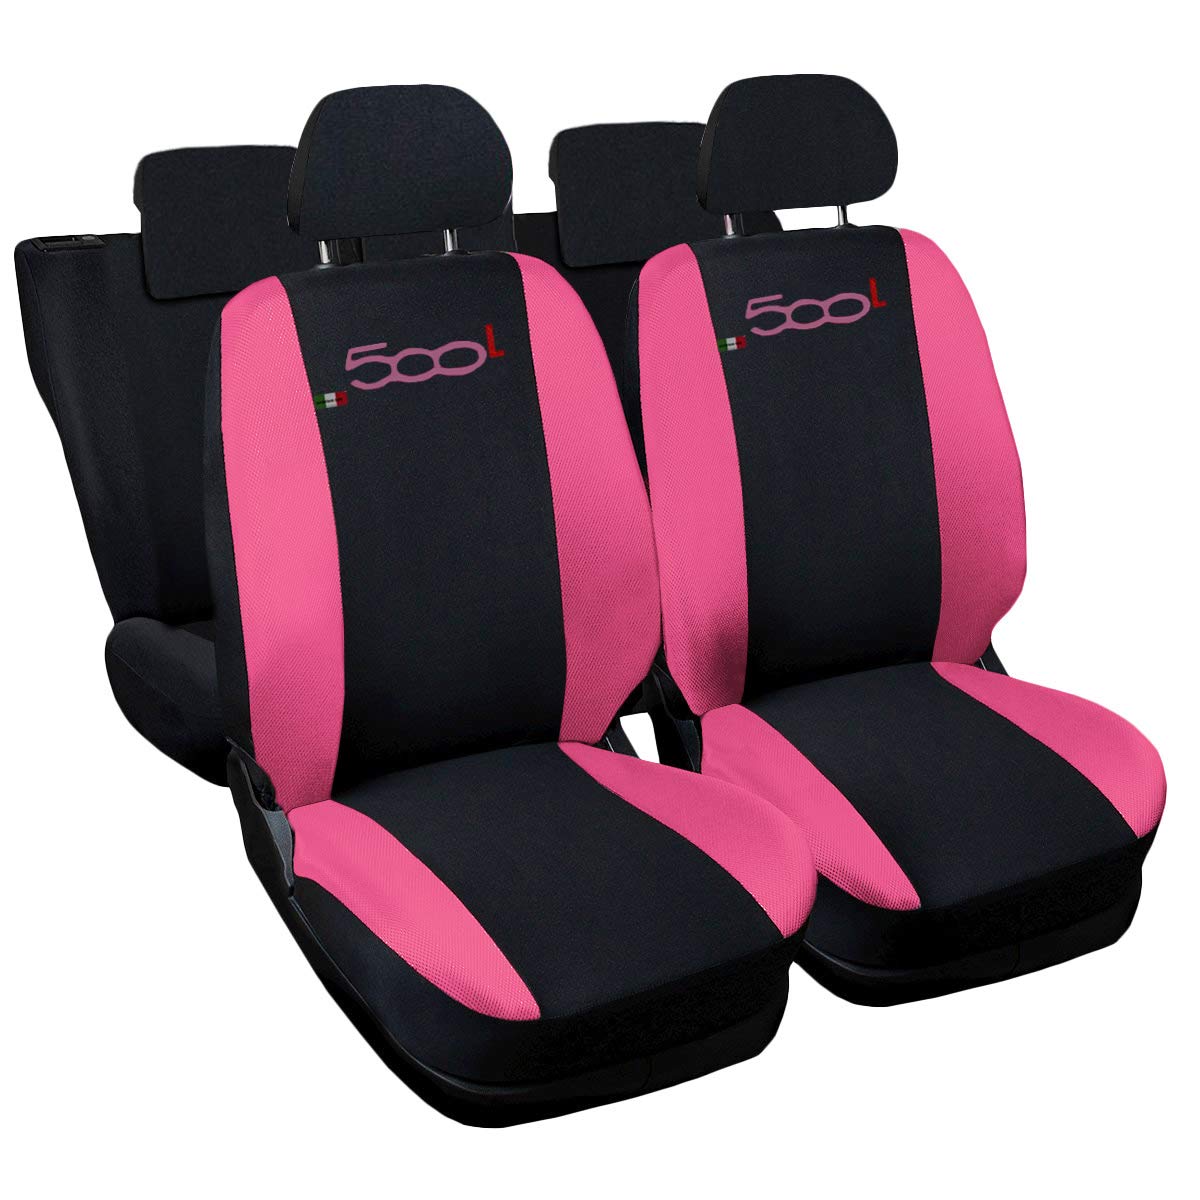 Auto Accessori Lupex - Sitzbezüge für Autositz, kompatibel Autositzbezüge für 500L, Schwarz Rosa, Made In Italy, für Vorder- und Rücksitze, Airbag-kompatibel von Auto Accessori Lupex